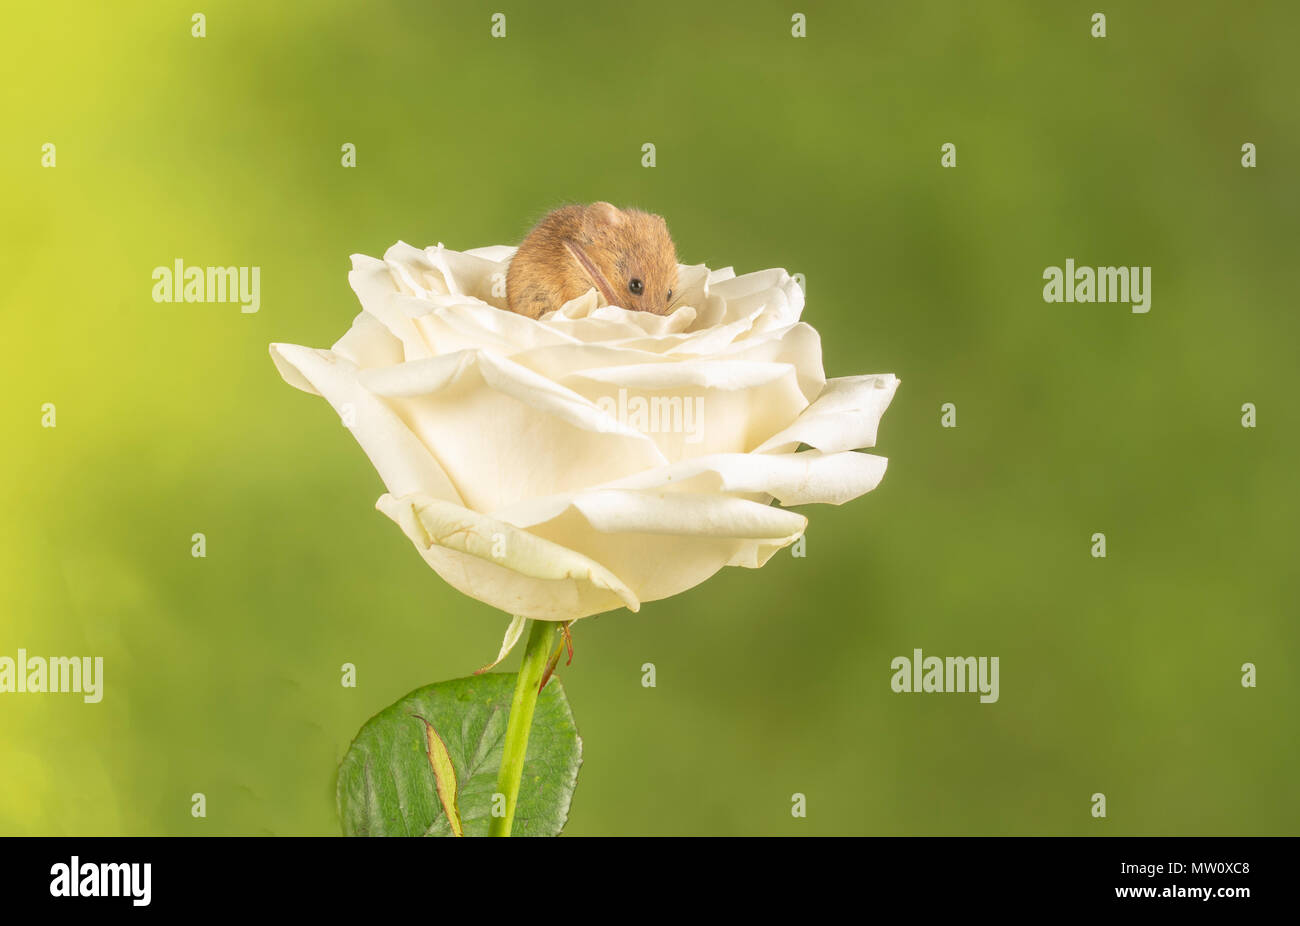 Havest souris sur une rose blanche dans un contexte de studio Banque D'Images